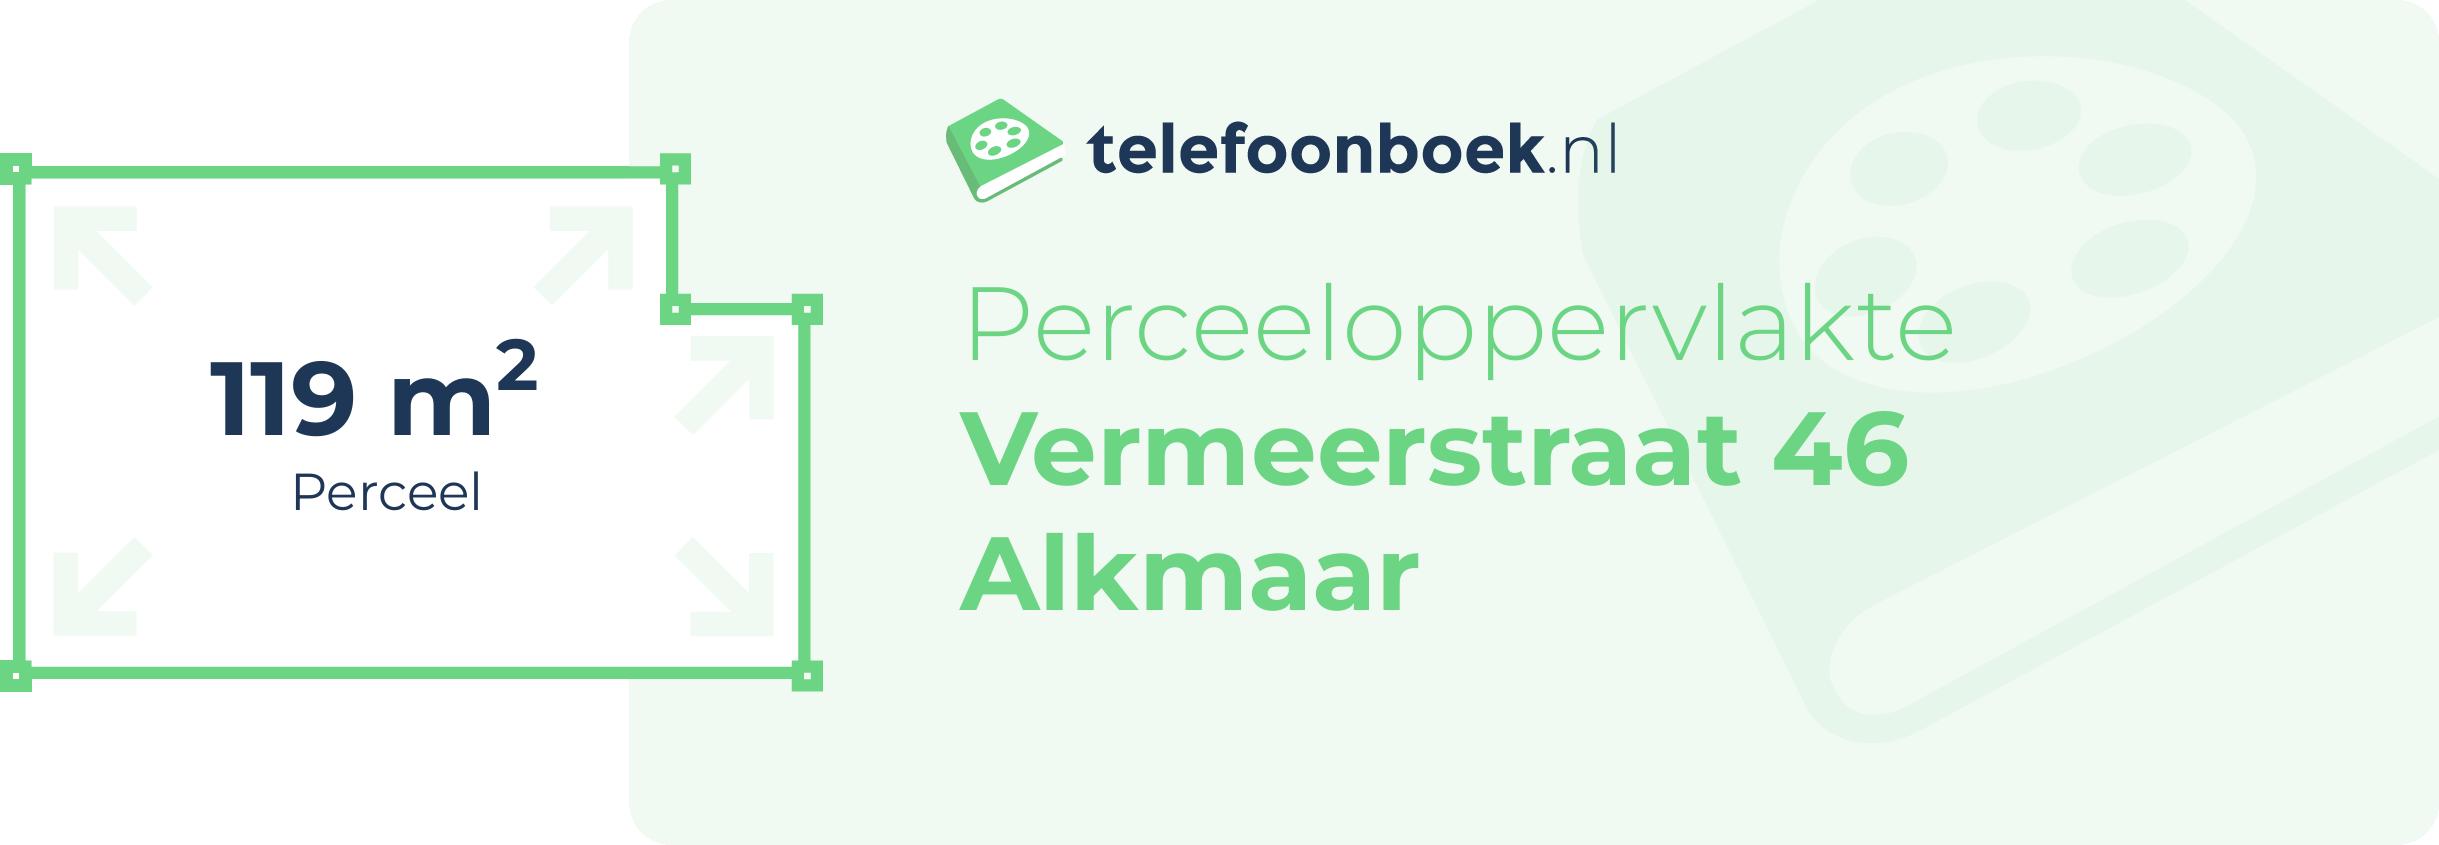 Perceeloppervlakte Vermeerstraat 46 Alkmaar